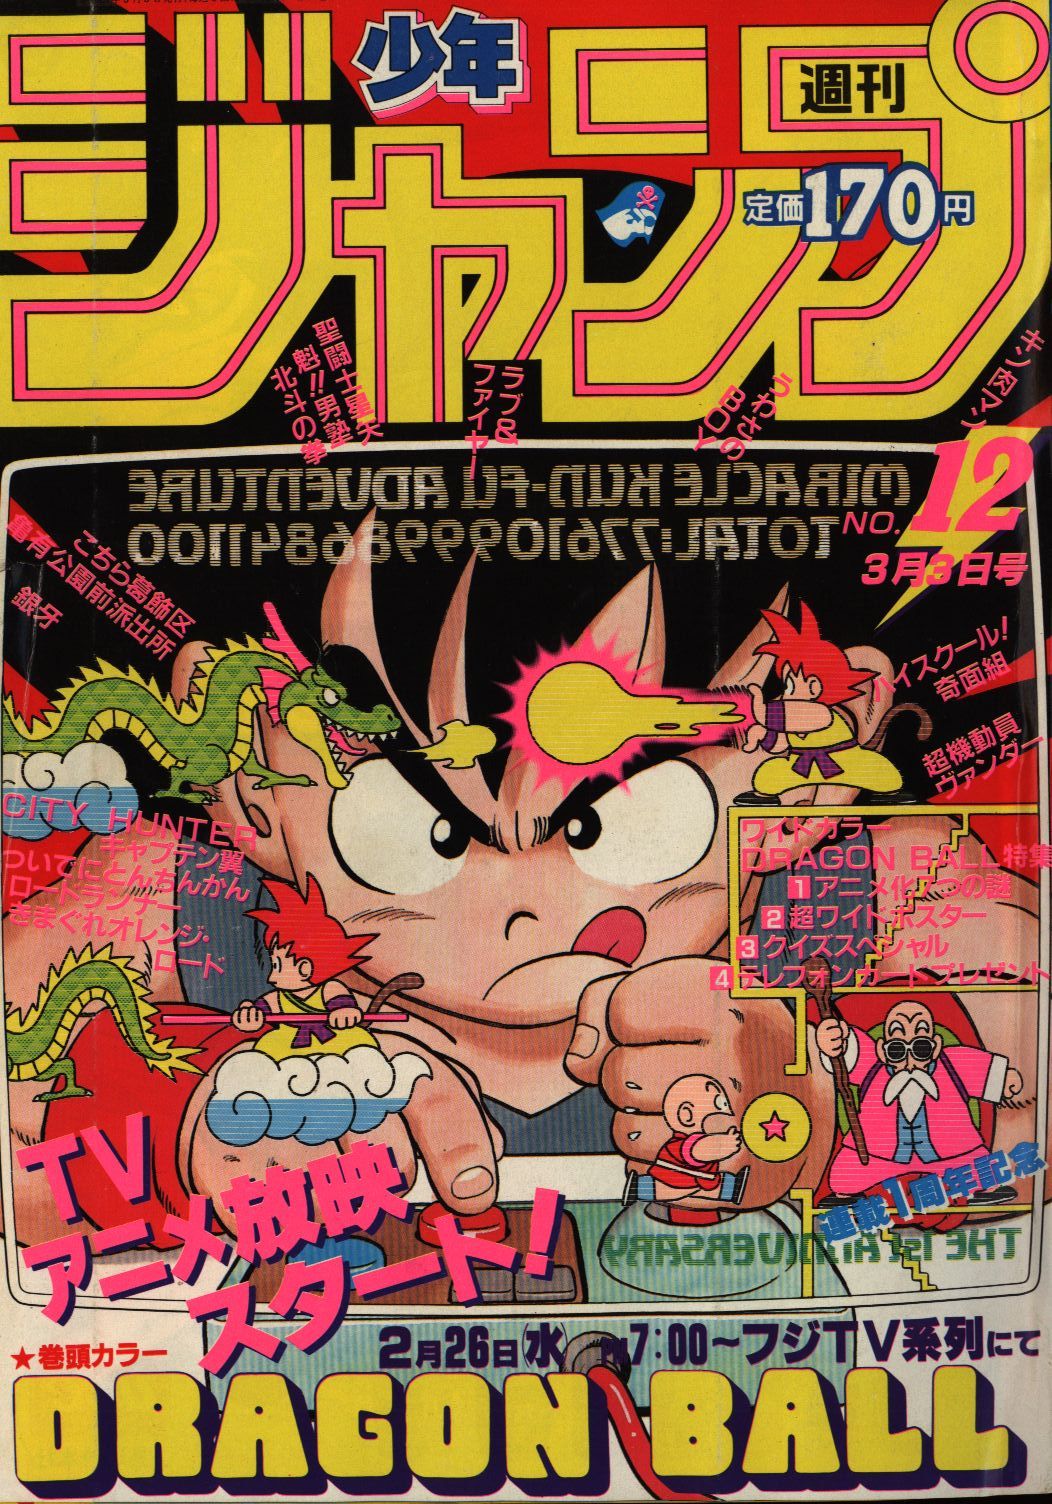 【超激レア】週刊少年ジャンプ 1986年 第12号 ドラゴンボール表紙特別号